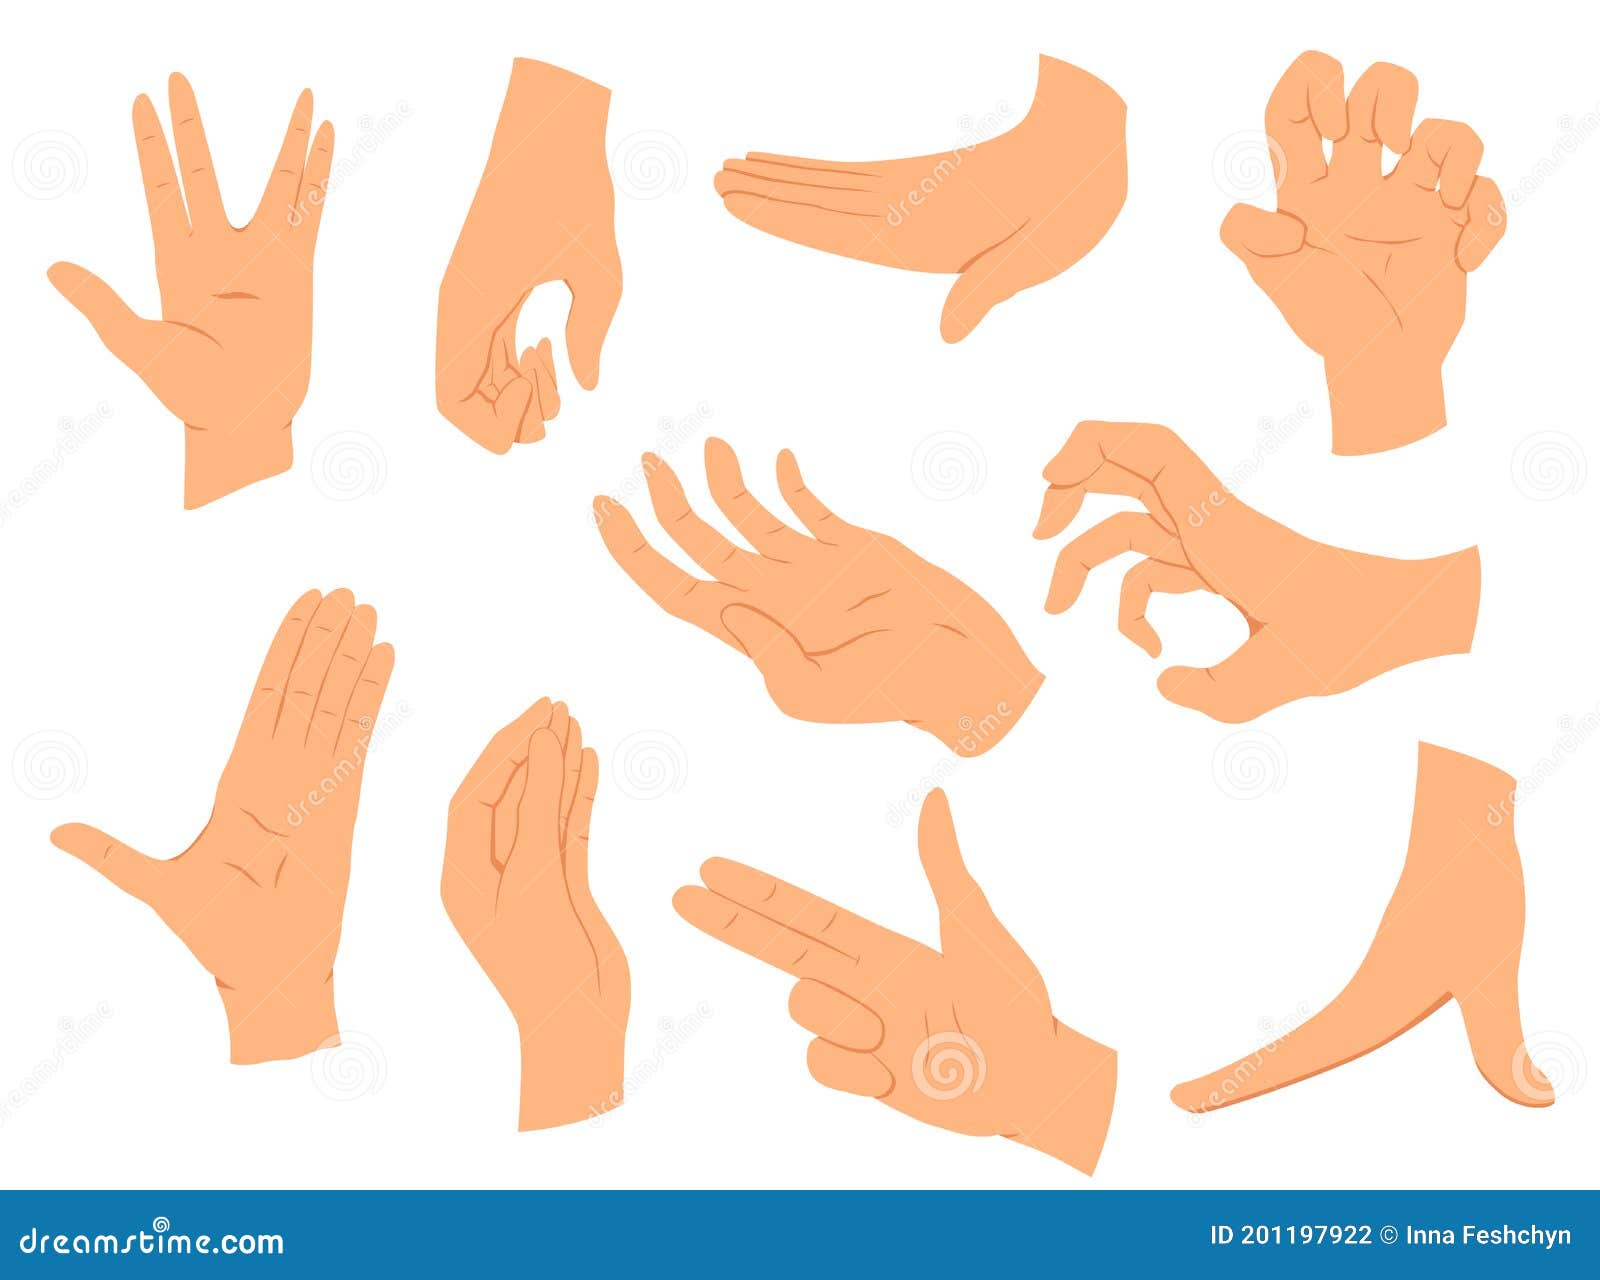 Hands Gestures.Vector Illustration Set Hands in Different ...